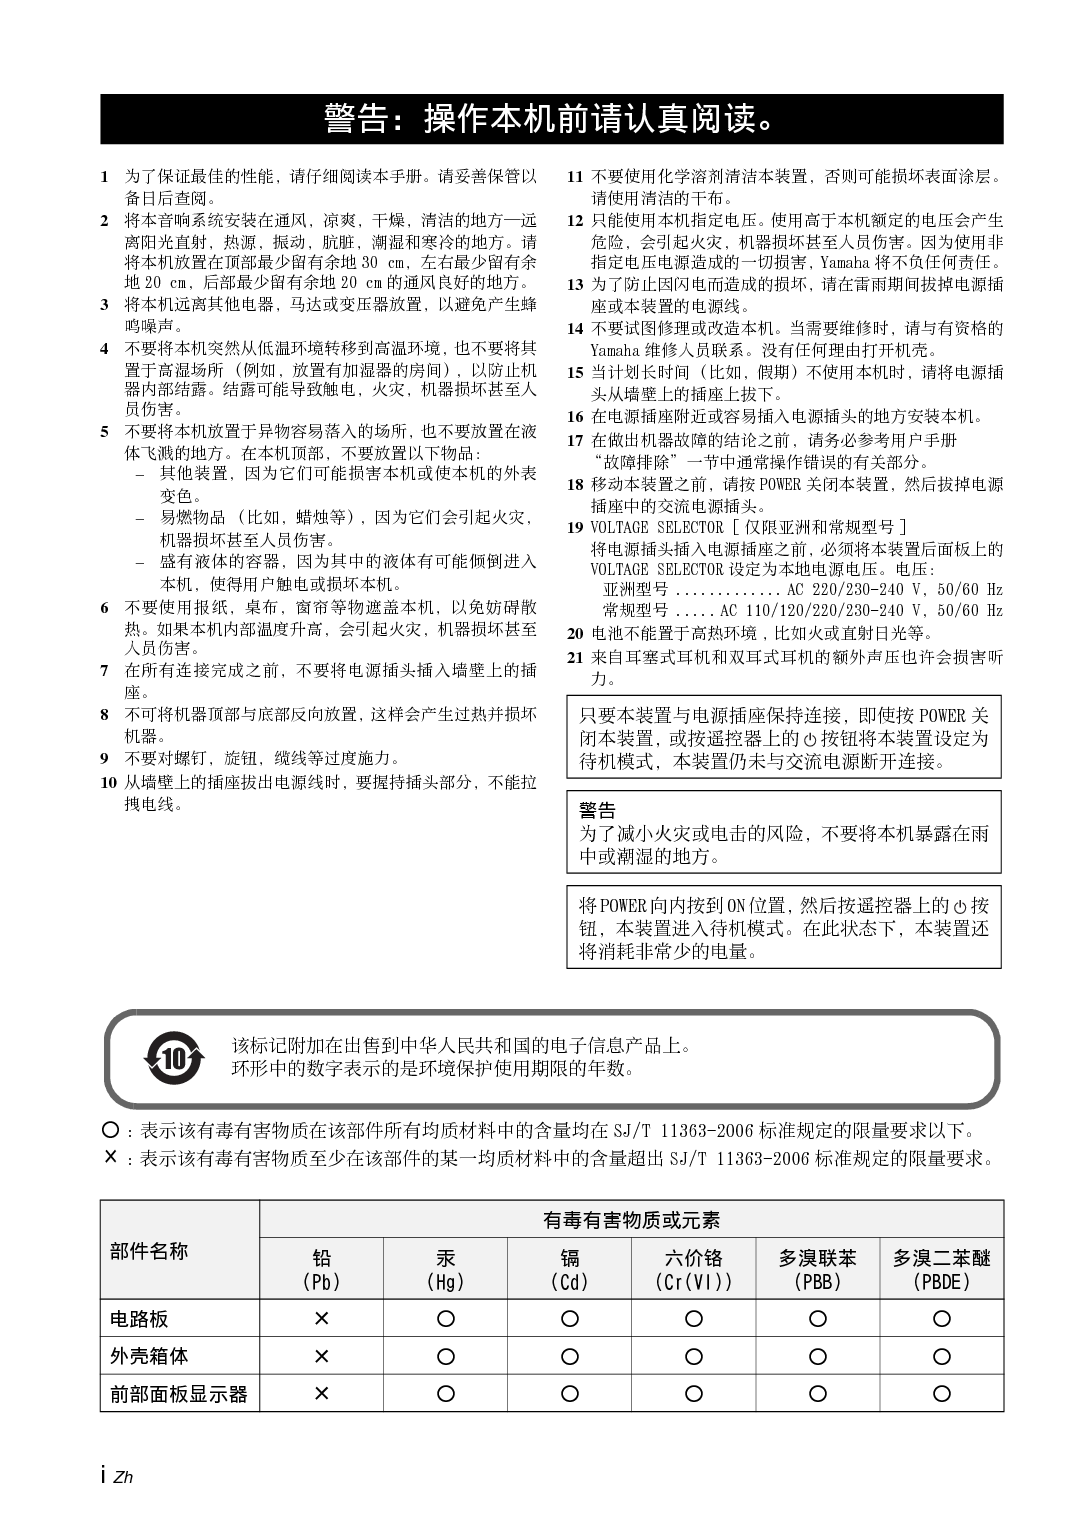 雅马哈 Yamaha A-S700 使用说明书 第1页